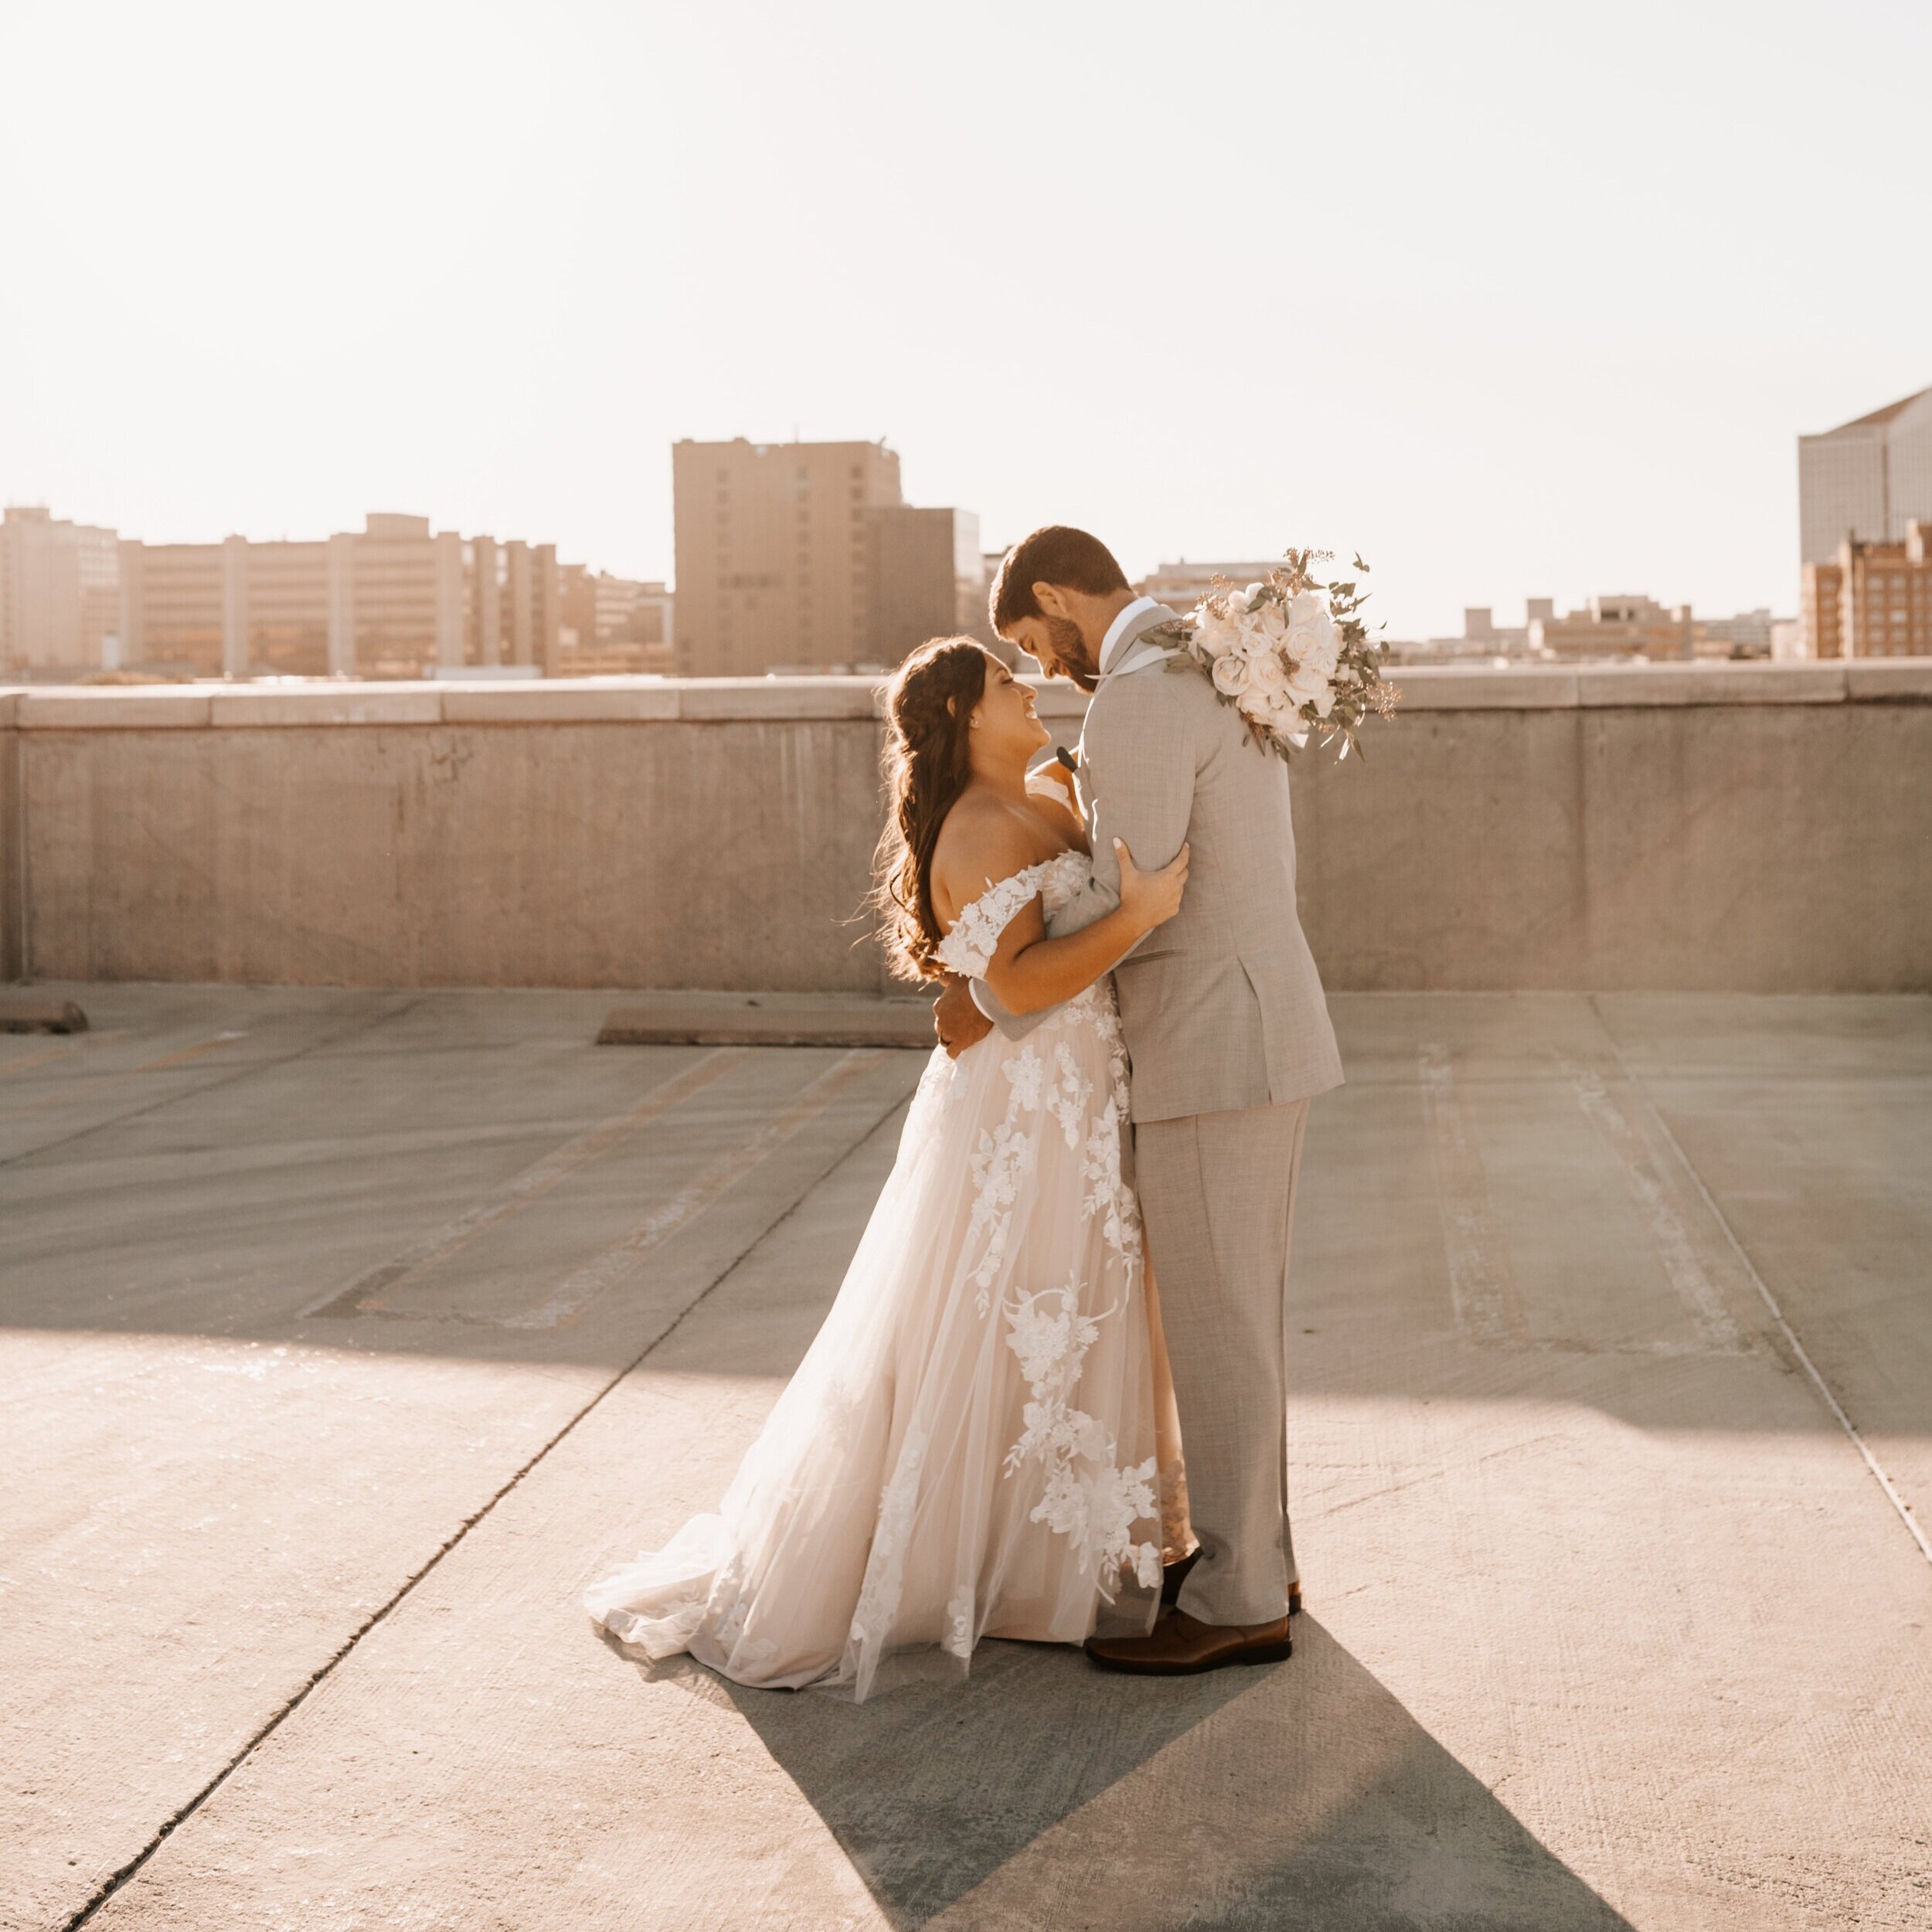 bride-groom-embracing-on-rooftop-against-wichita-skyline.jpg